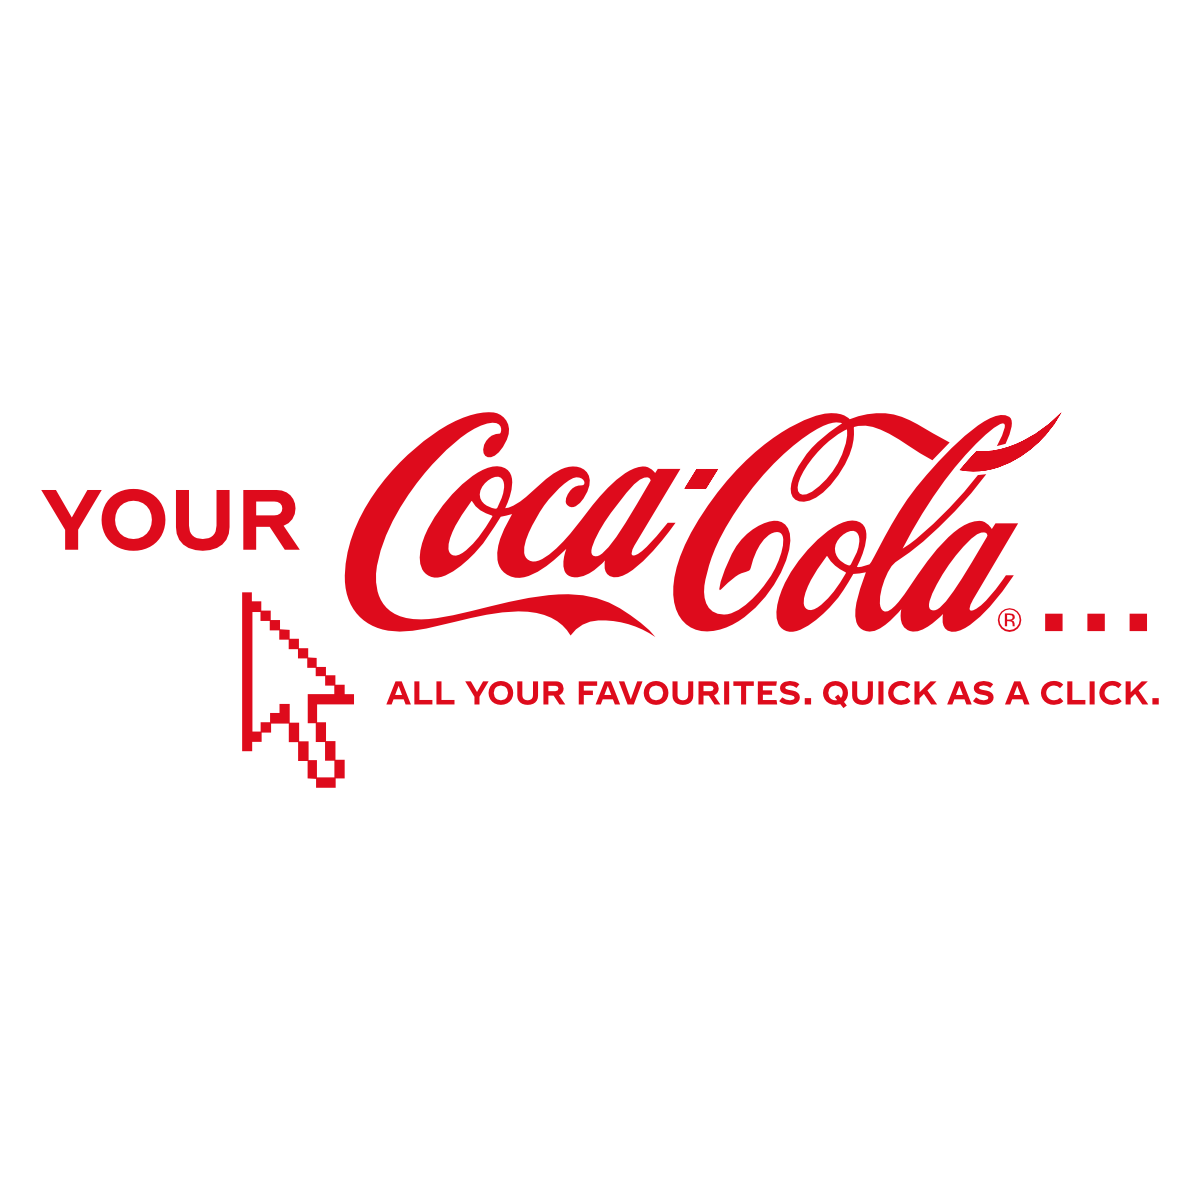 www.yourcoca-cola.co.uk